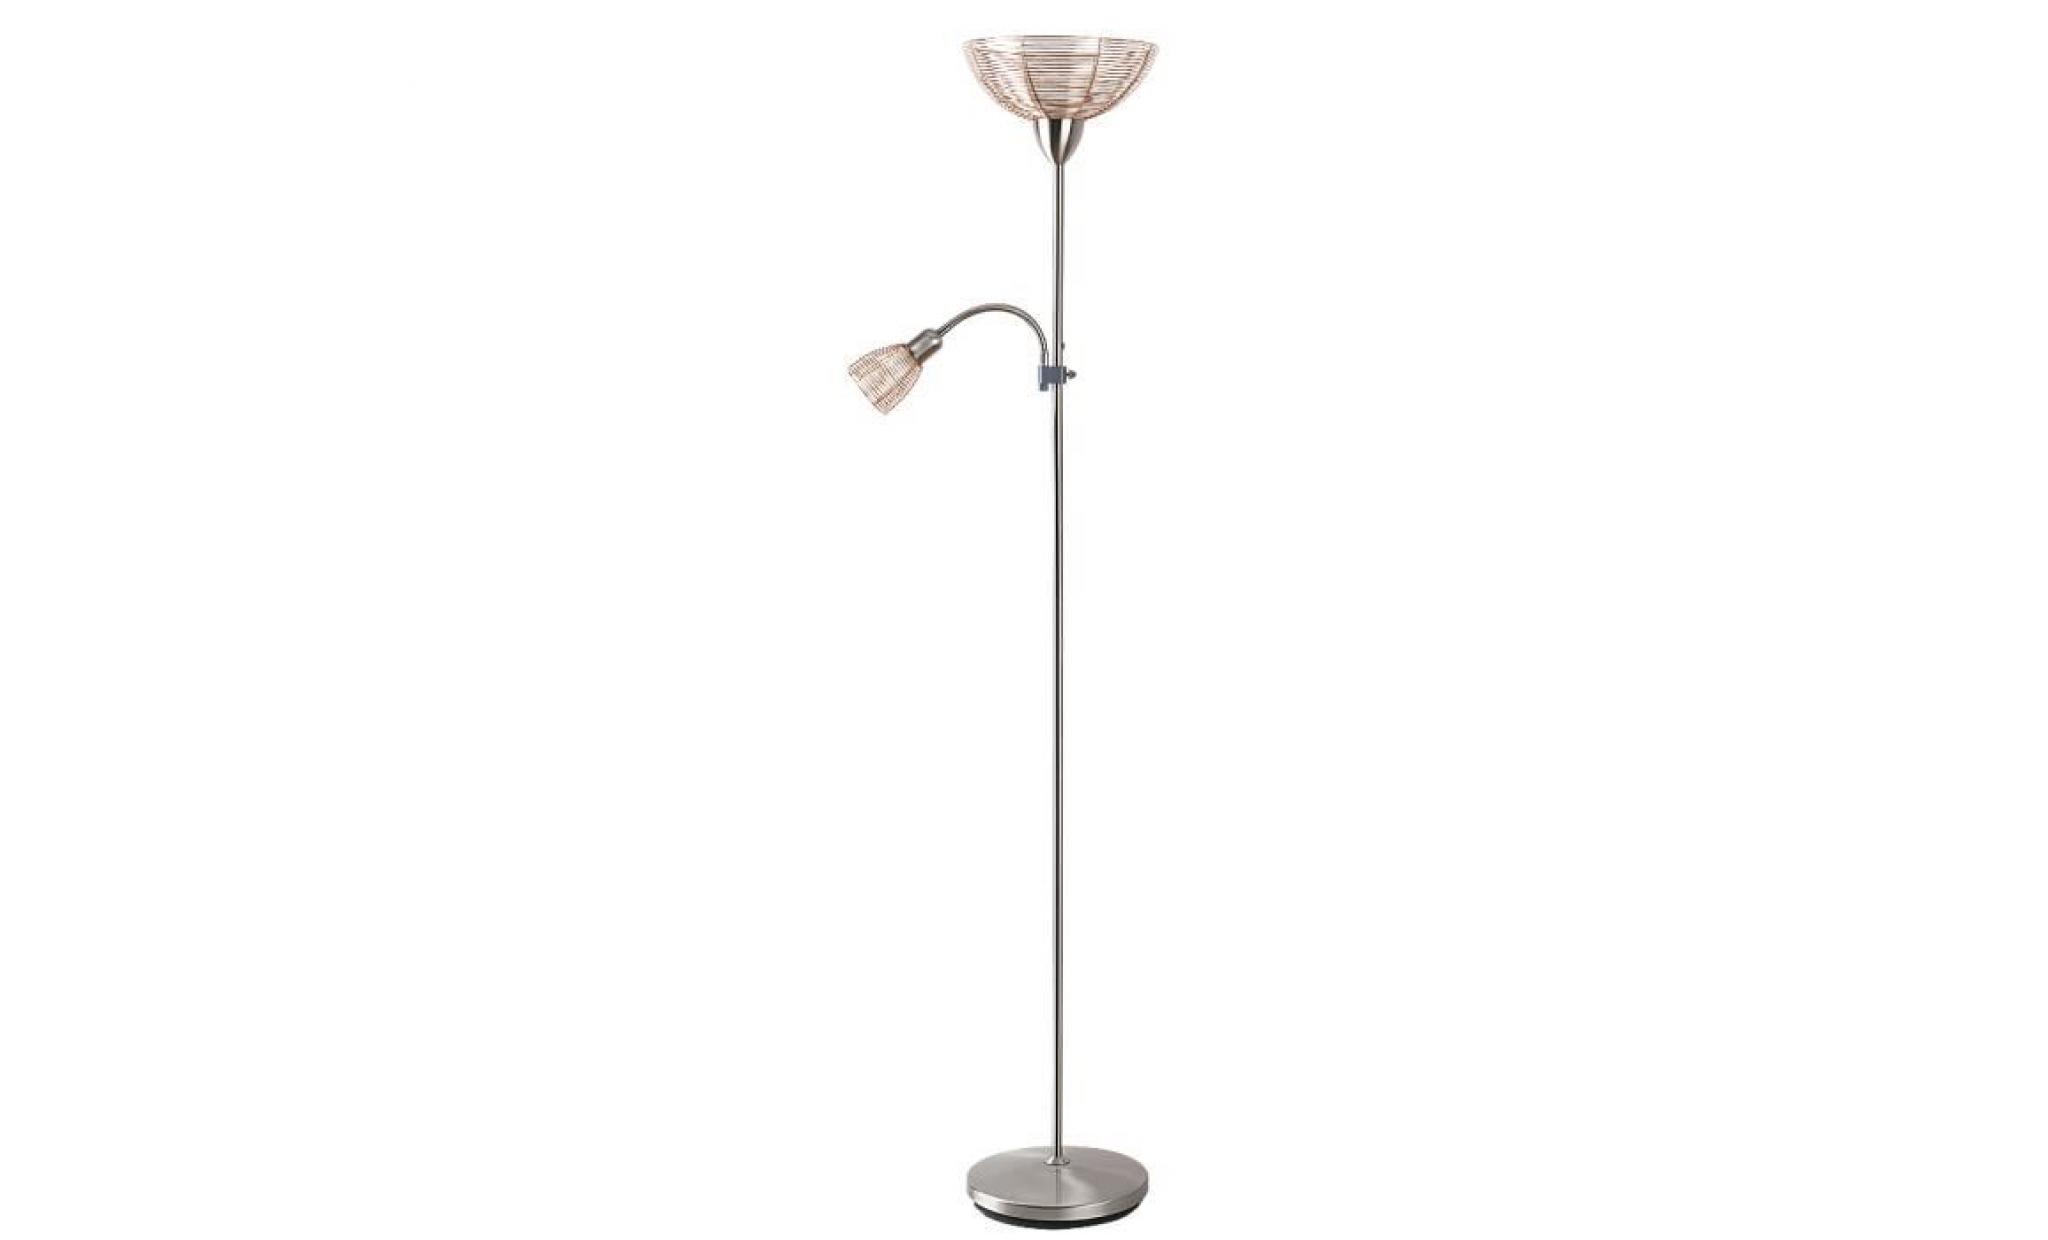 lamps rabalux ezra • desk and floor lamps • color : satin chrome• brown • material : metal • ref: 4186